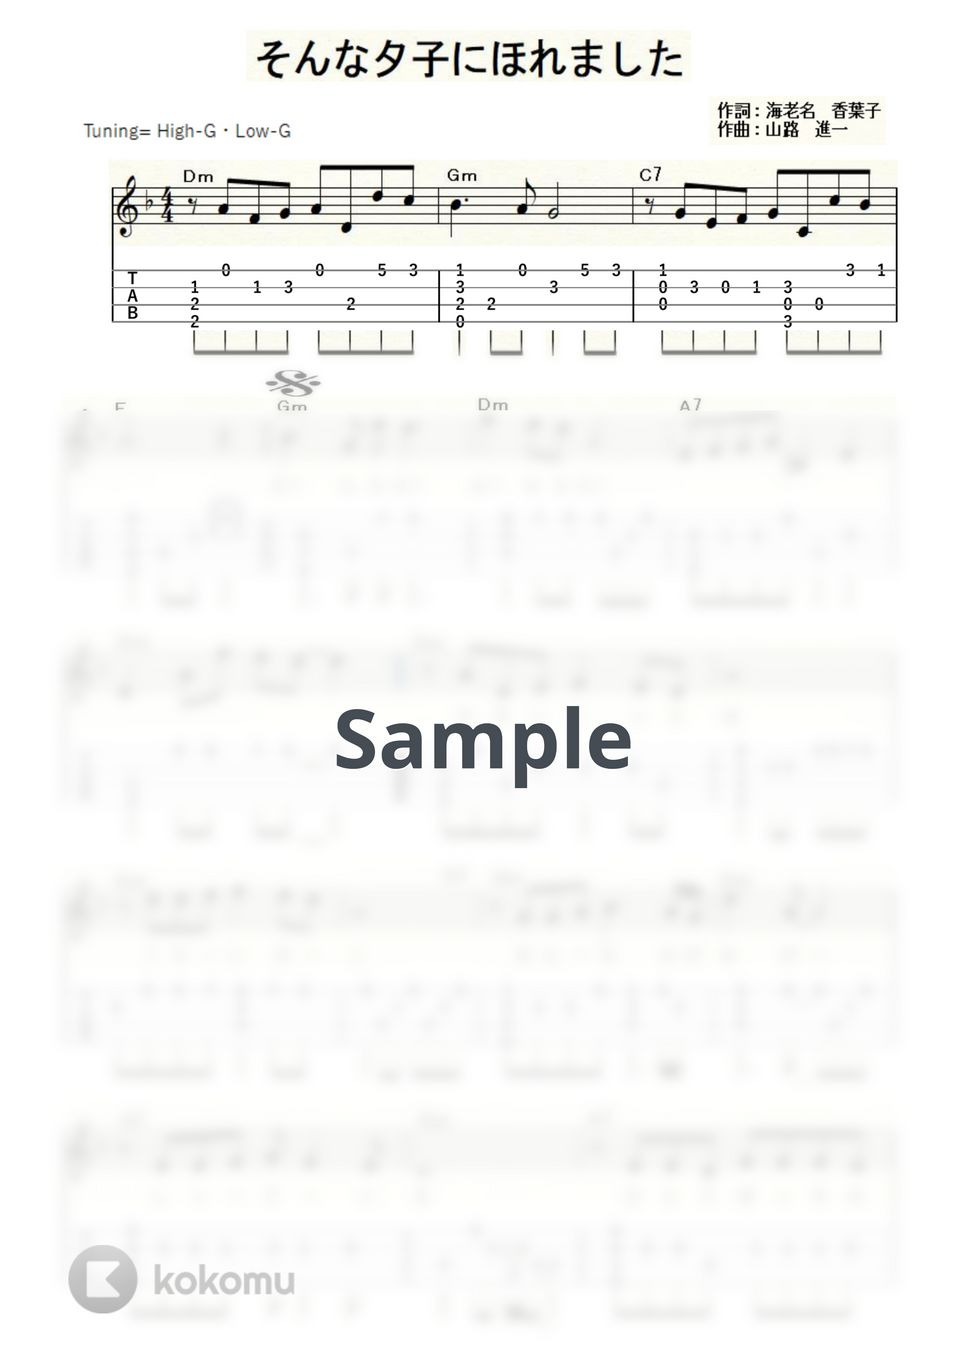 増位山 太志郎 - そんな夕子にほれました (ｳｸﾚﾚｿﾛ/High-G・Low-G/中級) by ukulelepapa